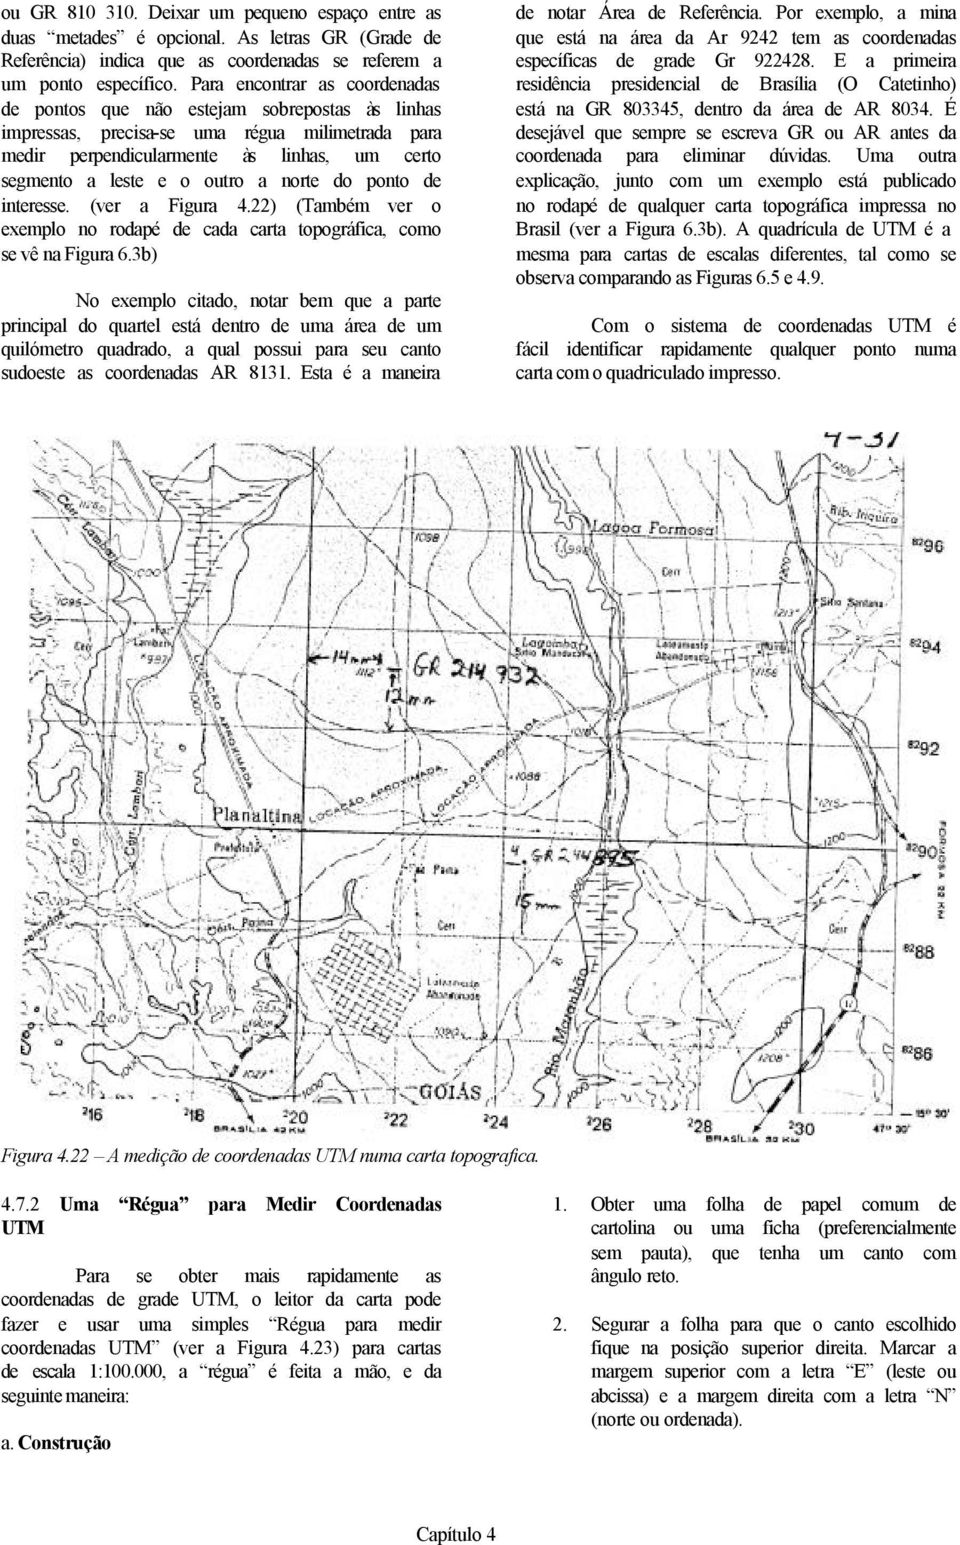 a norte do ponto de interesse. (ver a Figura 4.22) (Também ver o exemplo no rodapé de cada carta topográfica, como se vê na Figura 6.